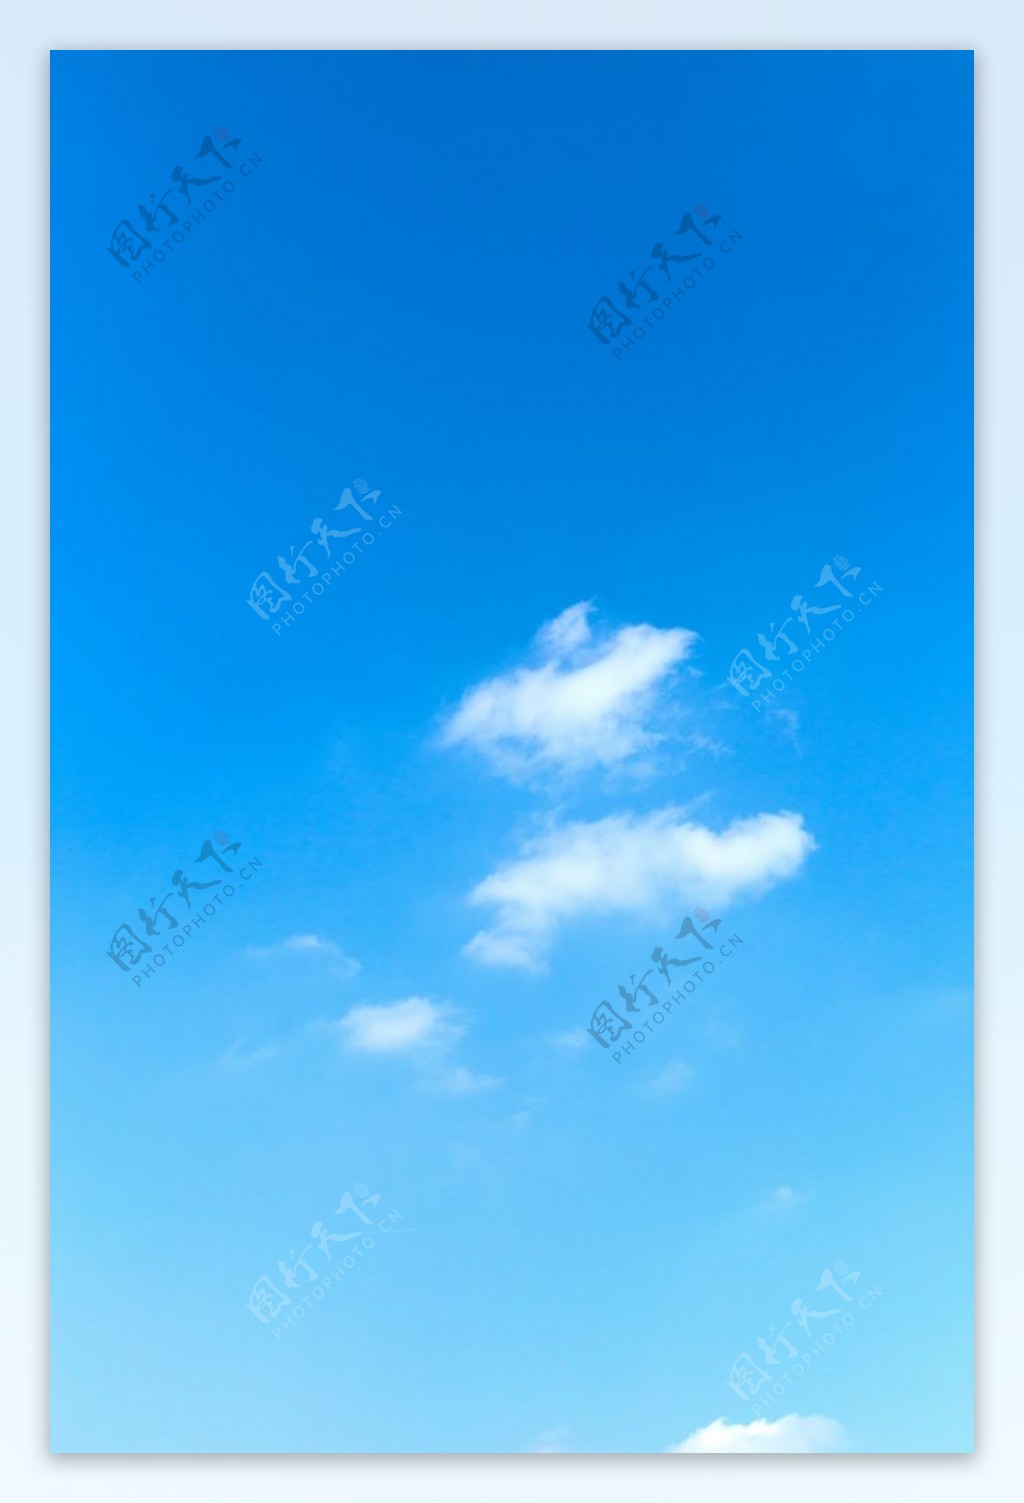 蓝天白云竖图手机壁纸设计素材